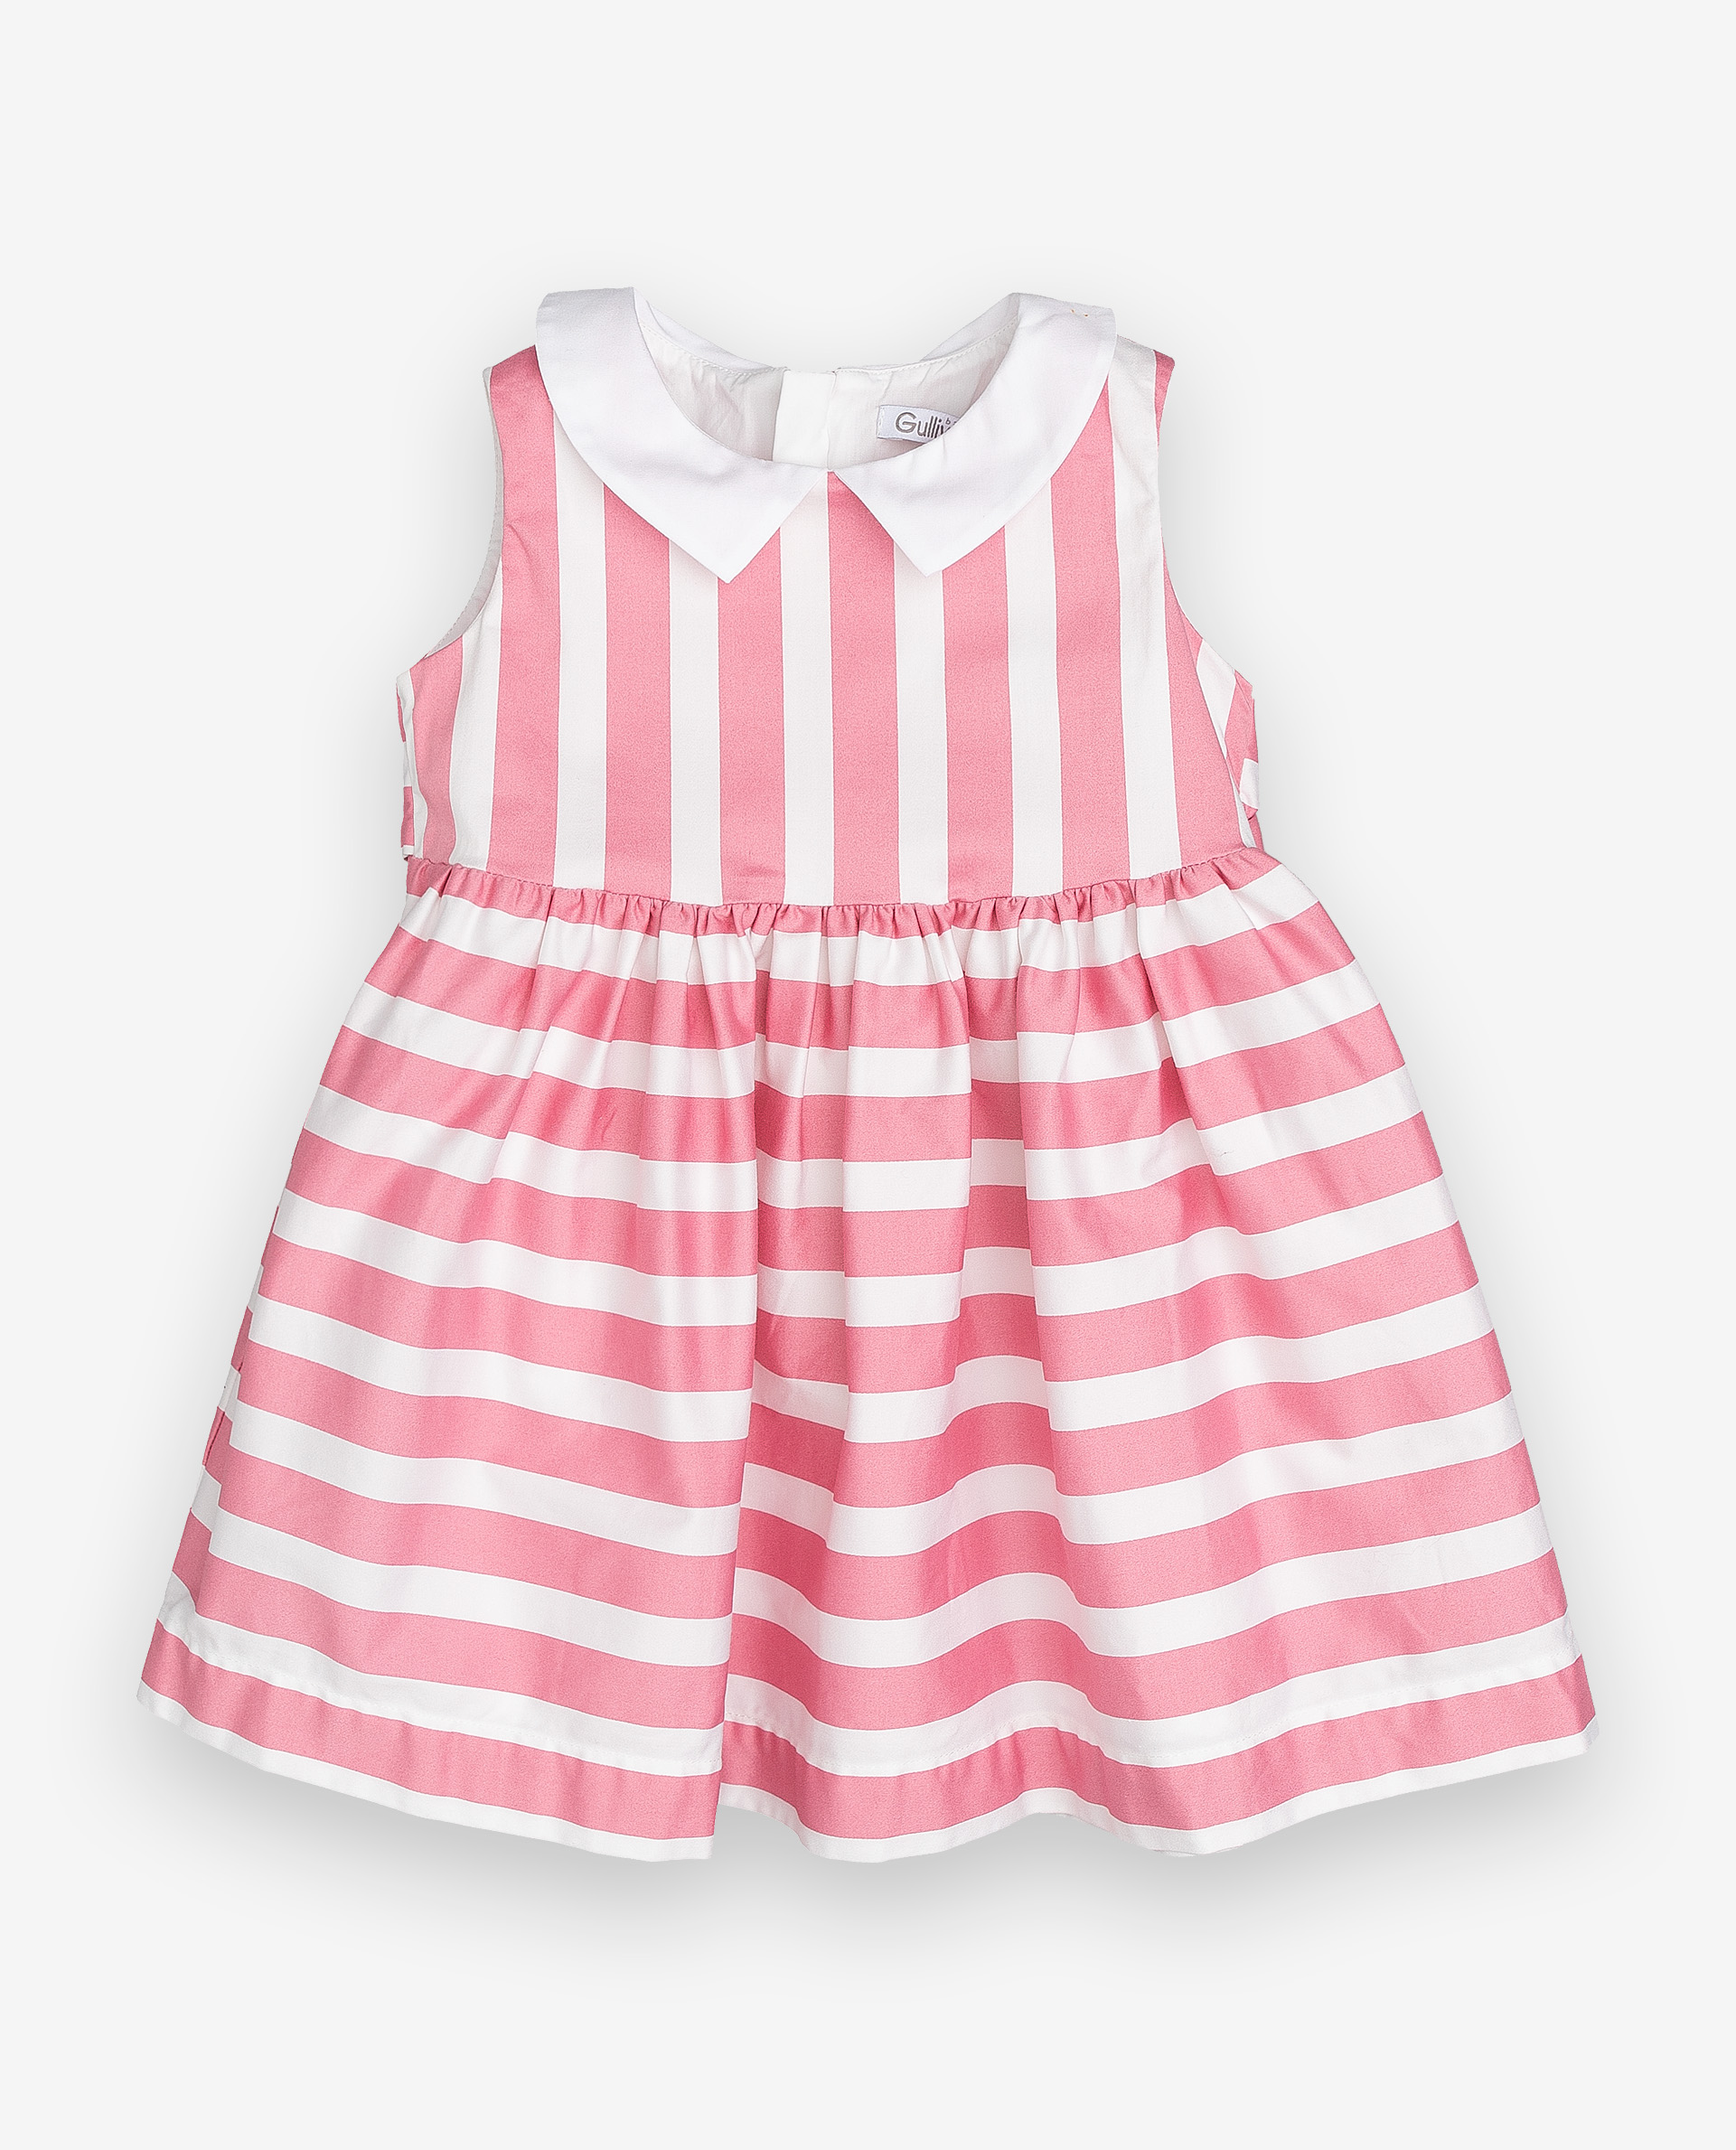 Купить 12031GBC2502, Платье в полоску Gulliver, Gulliver Baby, розовый, 74, Женский, ВЕСНА/ЛЕТО 2020 (shop: GulliverMarket Gulliver Market)